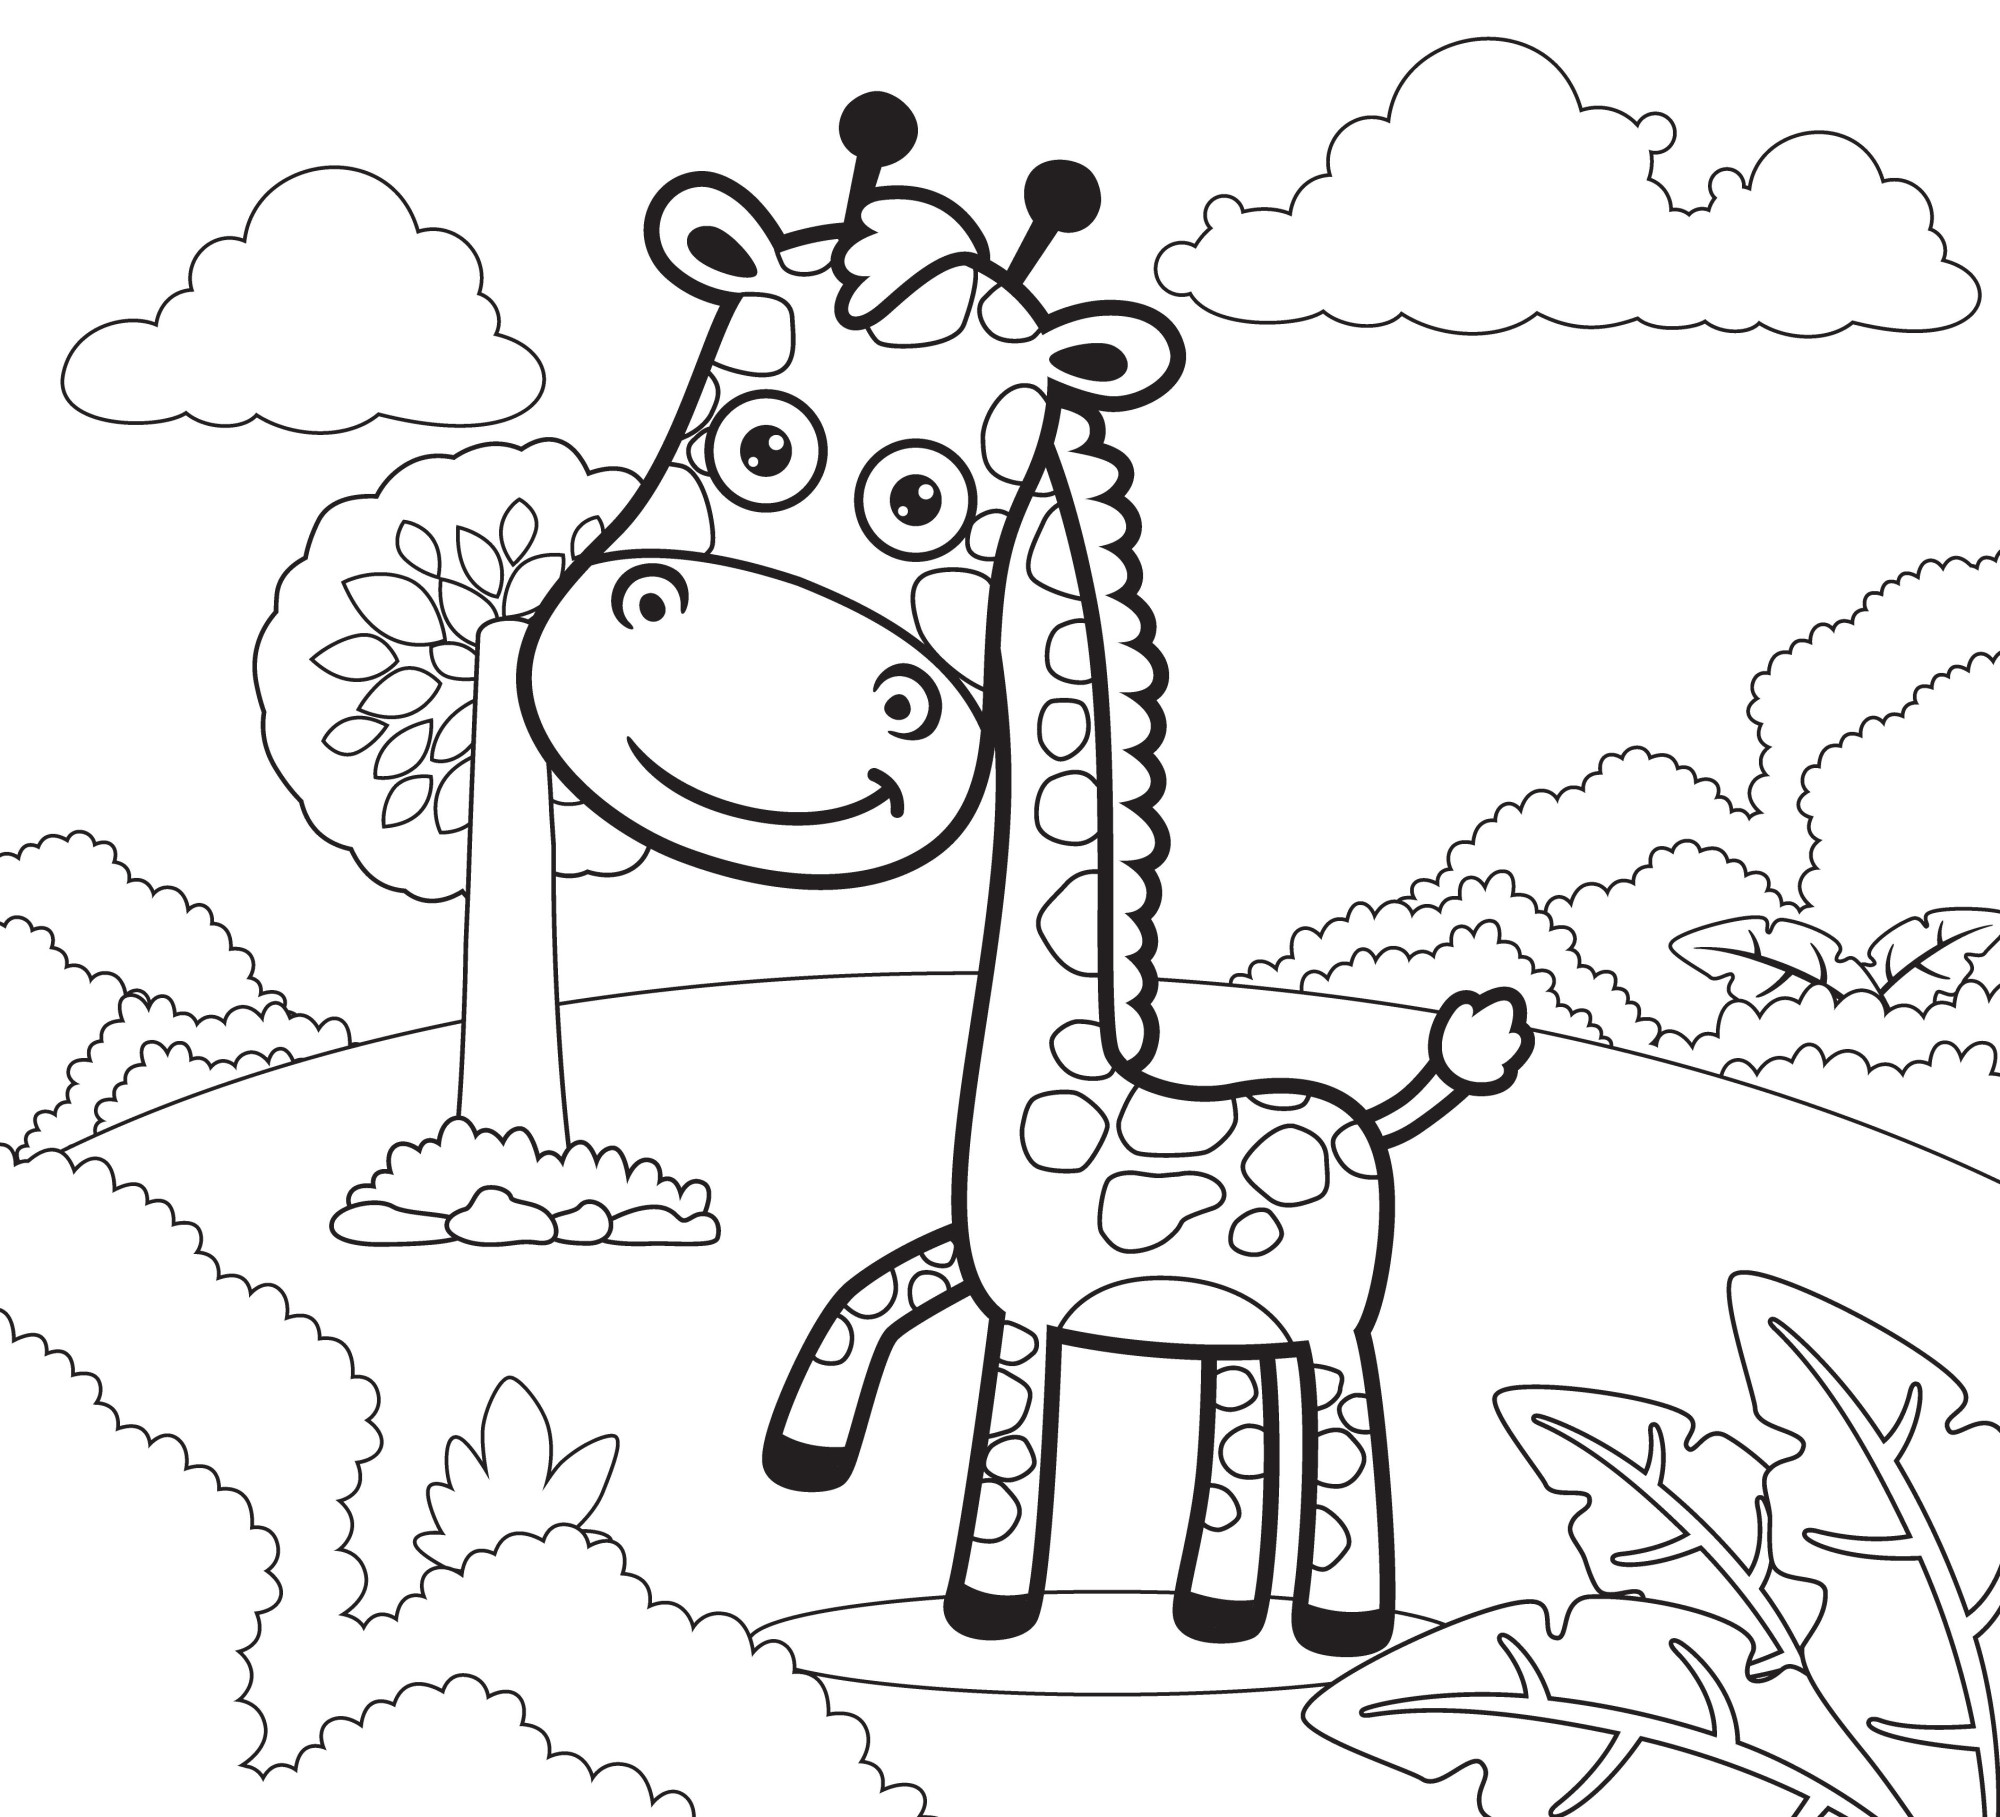 Раскраска для детей: мультяшный жираф на опушке леса